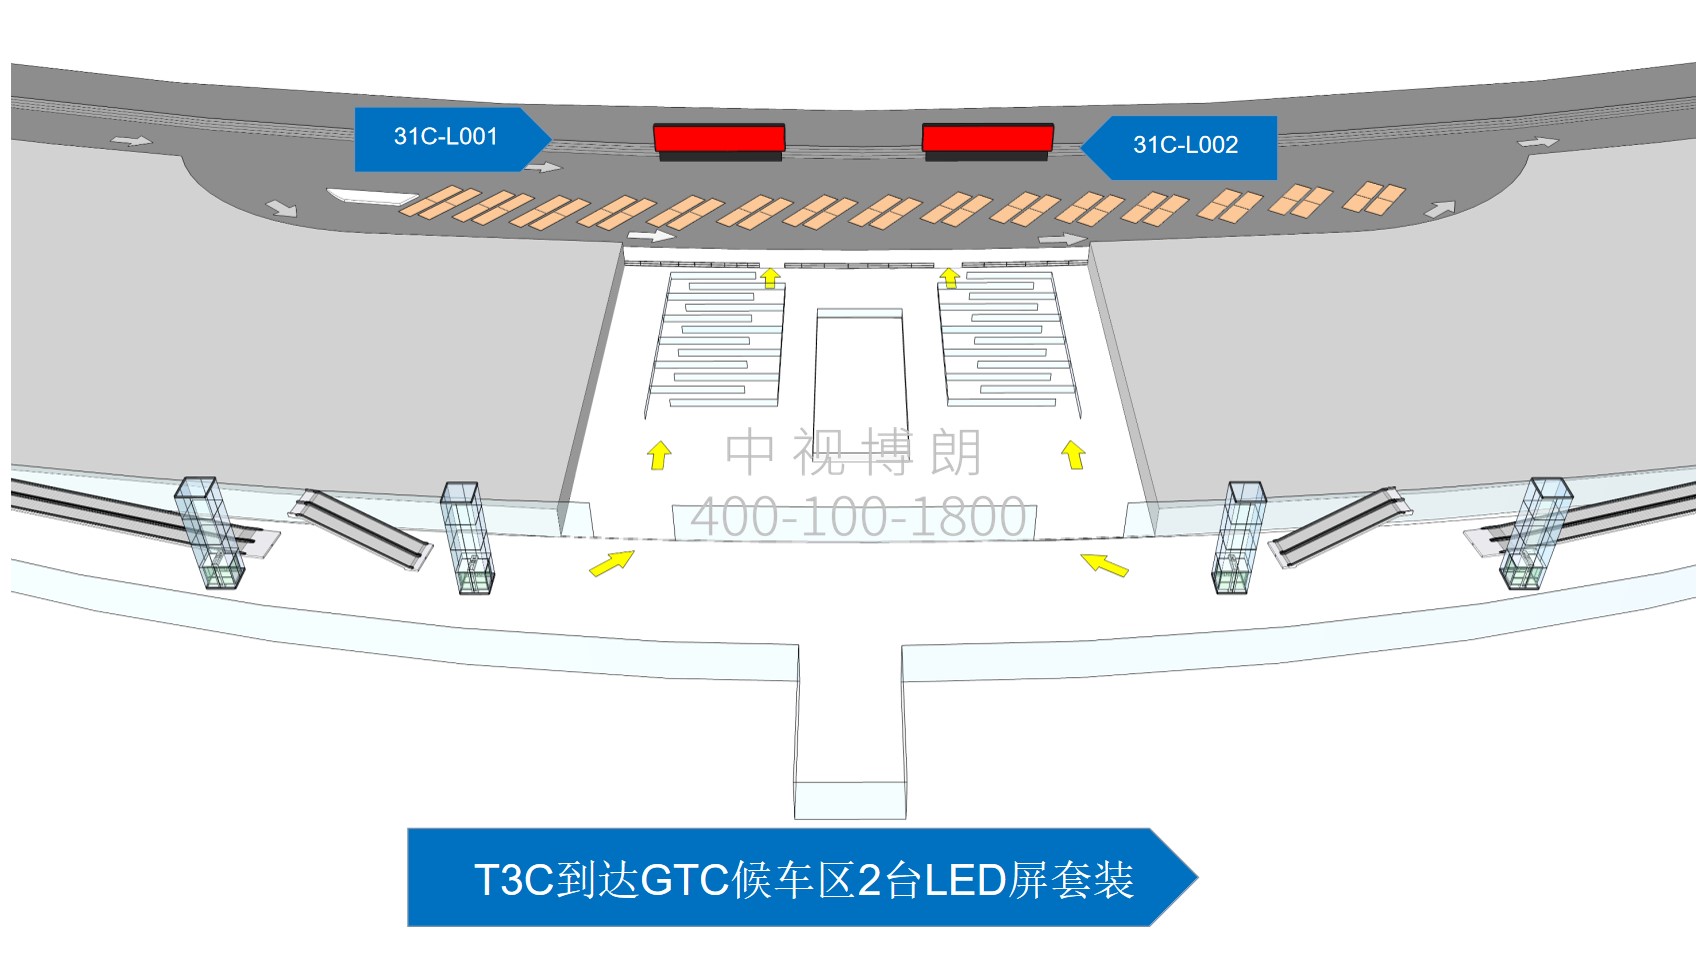 首都机场广告-T3C到达GTC候车区LED屏套装点位图